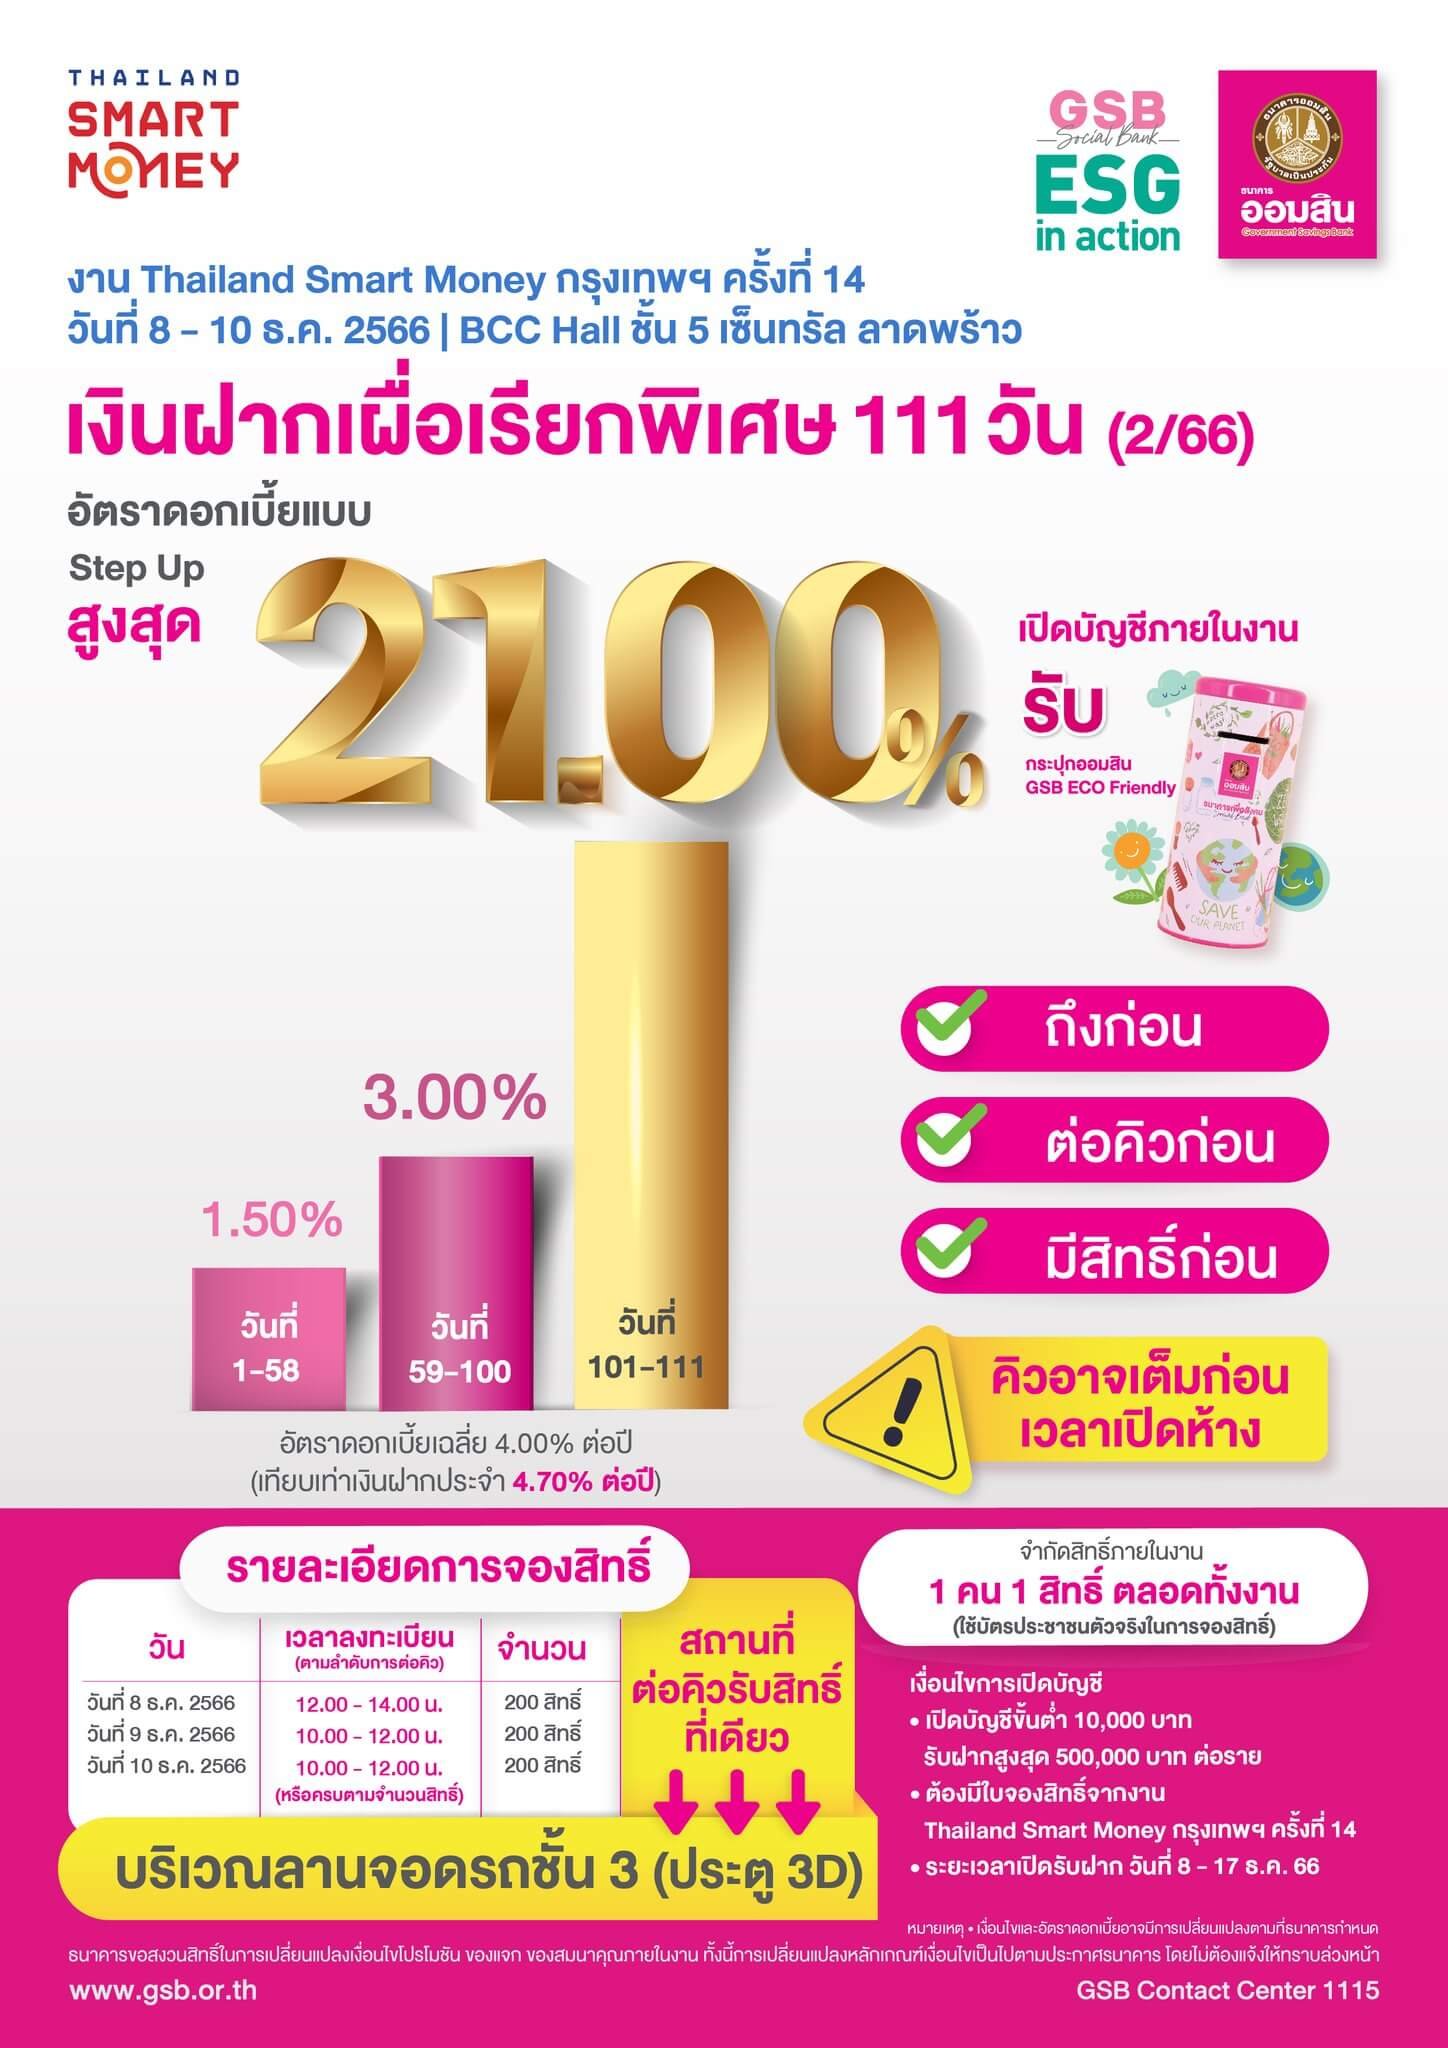 กรุงไทย-ออมสิน อัดโปรแรง เงินฝากดอกเบี้ยพิเศษแบบ Step up สูงสุด 21.00%